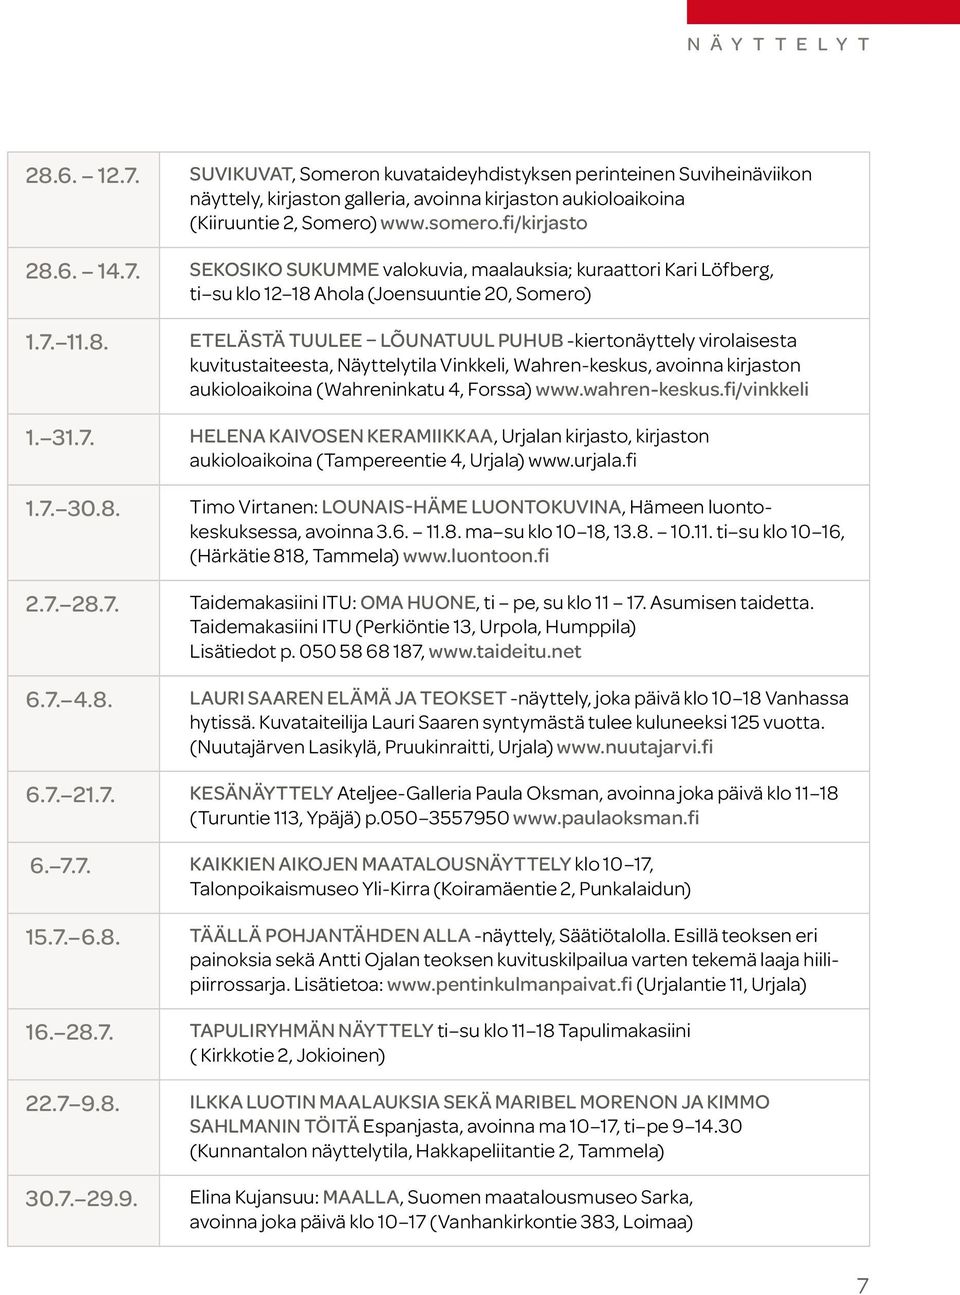 wahren-keskus.fi/vinkkeli 1. 31.7. Helena Kaivosen keramiikkaa, Urjalan kirjasto, kirjaston aukioloaikoina (Tampereentie 4, Urjala) www.urjala.fi 1.7. 30.8.